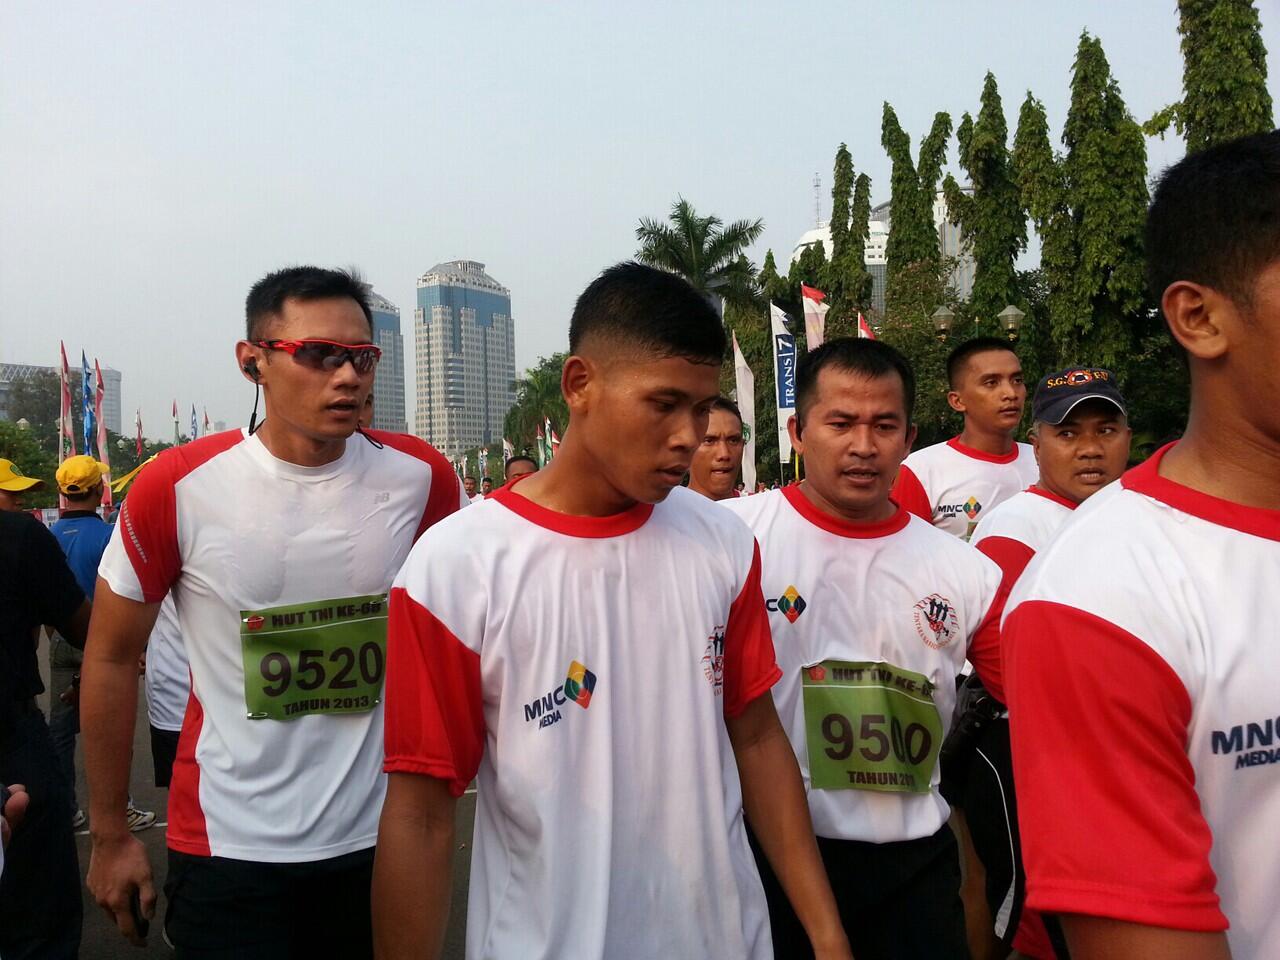 Soal Lari Maraton Agus Yudhoyono Ramai di Twitter &#91;Finish paling terakhir!&#93;